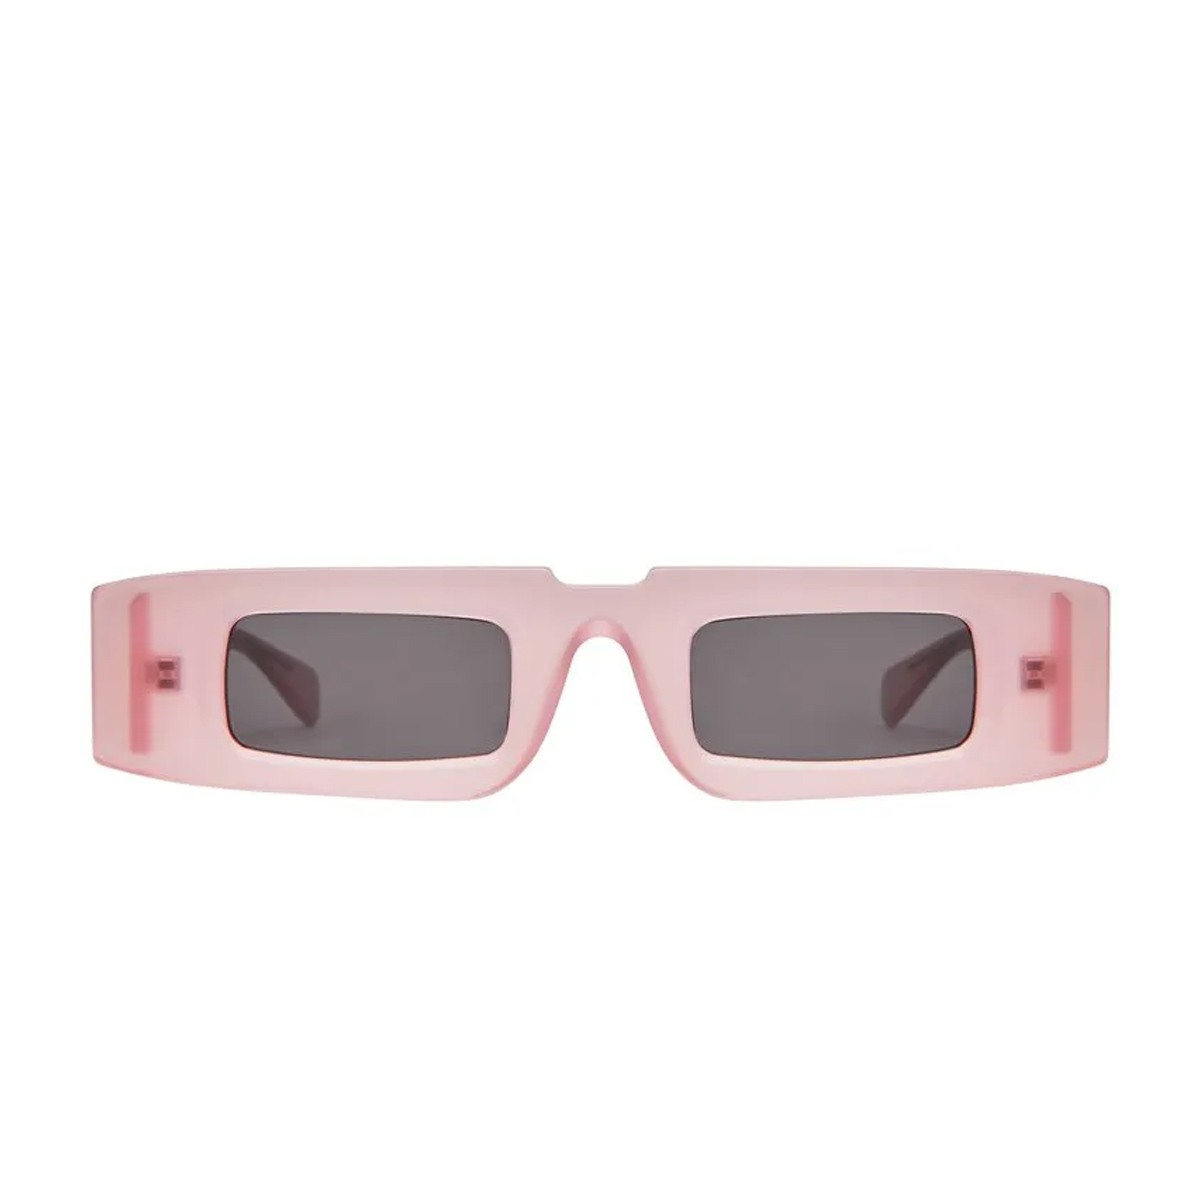 Kuboraum K5 | Women's sunglasses